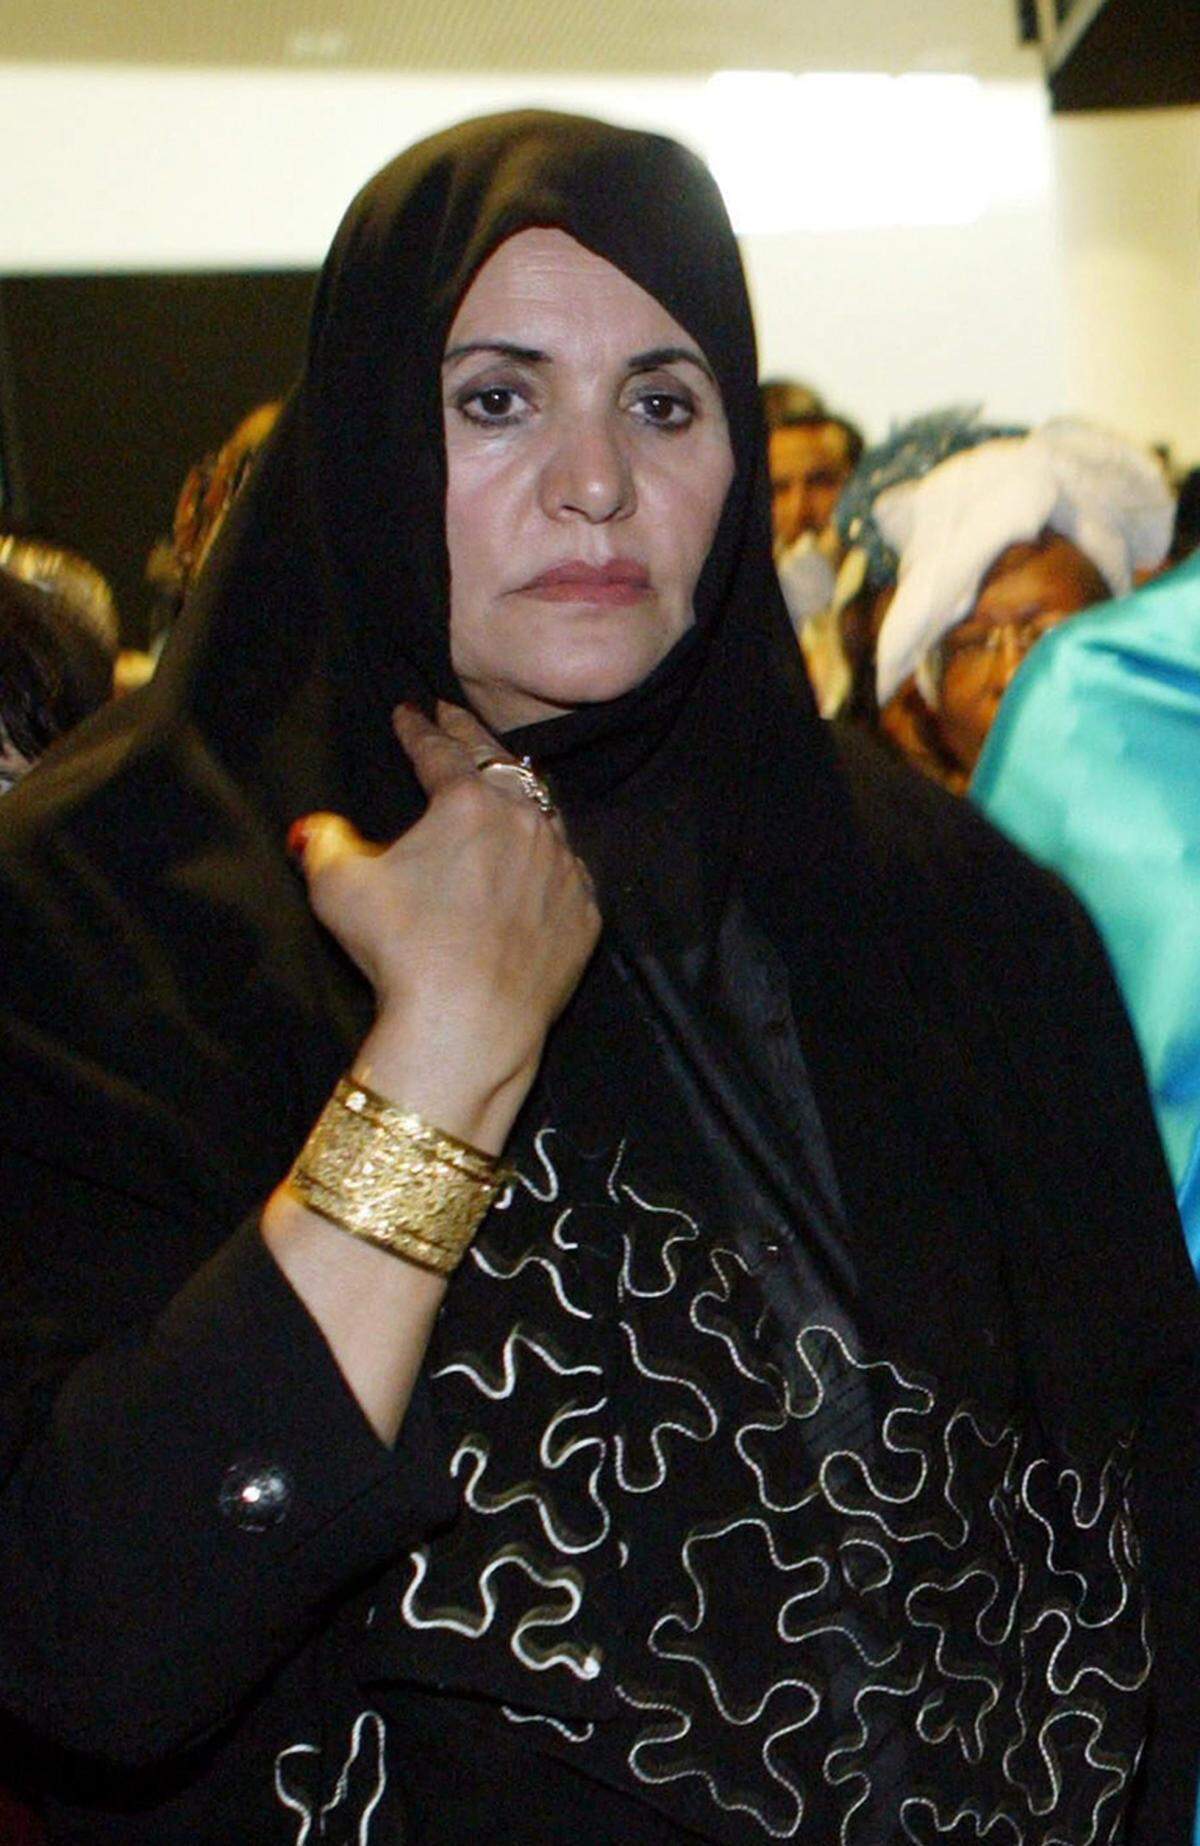 Die zweite Ehefrau des libyschen Diktators Muammar al-Gaddafi und Mutter von sieben seiner acht Kinder trat seltener in den Vordergrund als ihre Kolleginnen in Tunesien, Ägypten und Syrien. Wenn, ließ sie sich als brave Hausfrau und Mutter darstellen. Im Hintergrund soll sie aber auch großen politischen Einfluss gehabt haben. Während des Aufstands setzte sie sich zusammen mit drei ihrer Kinder nach Algerien ab.